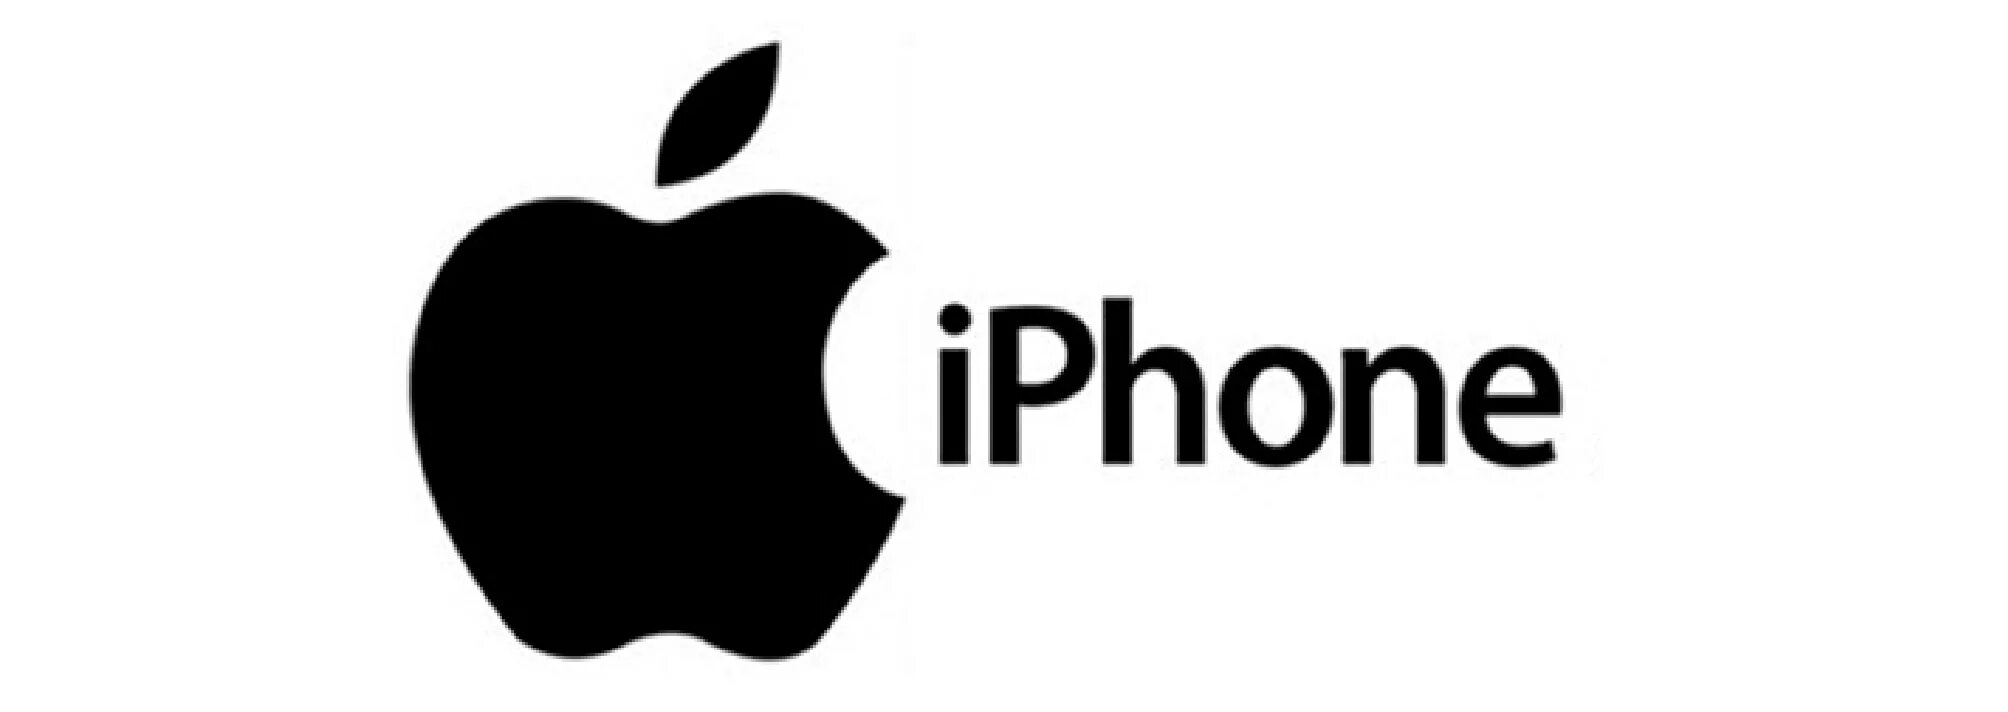 Эмблема айфона. Надпись айфон. Торговая марка Apple. Товарный знак айфон. Создание логотип на айфоне